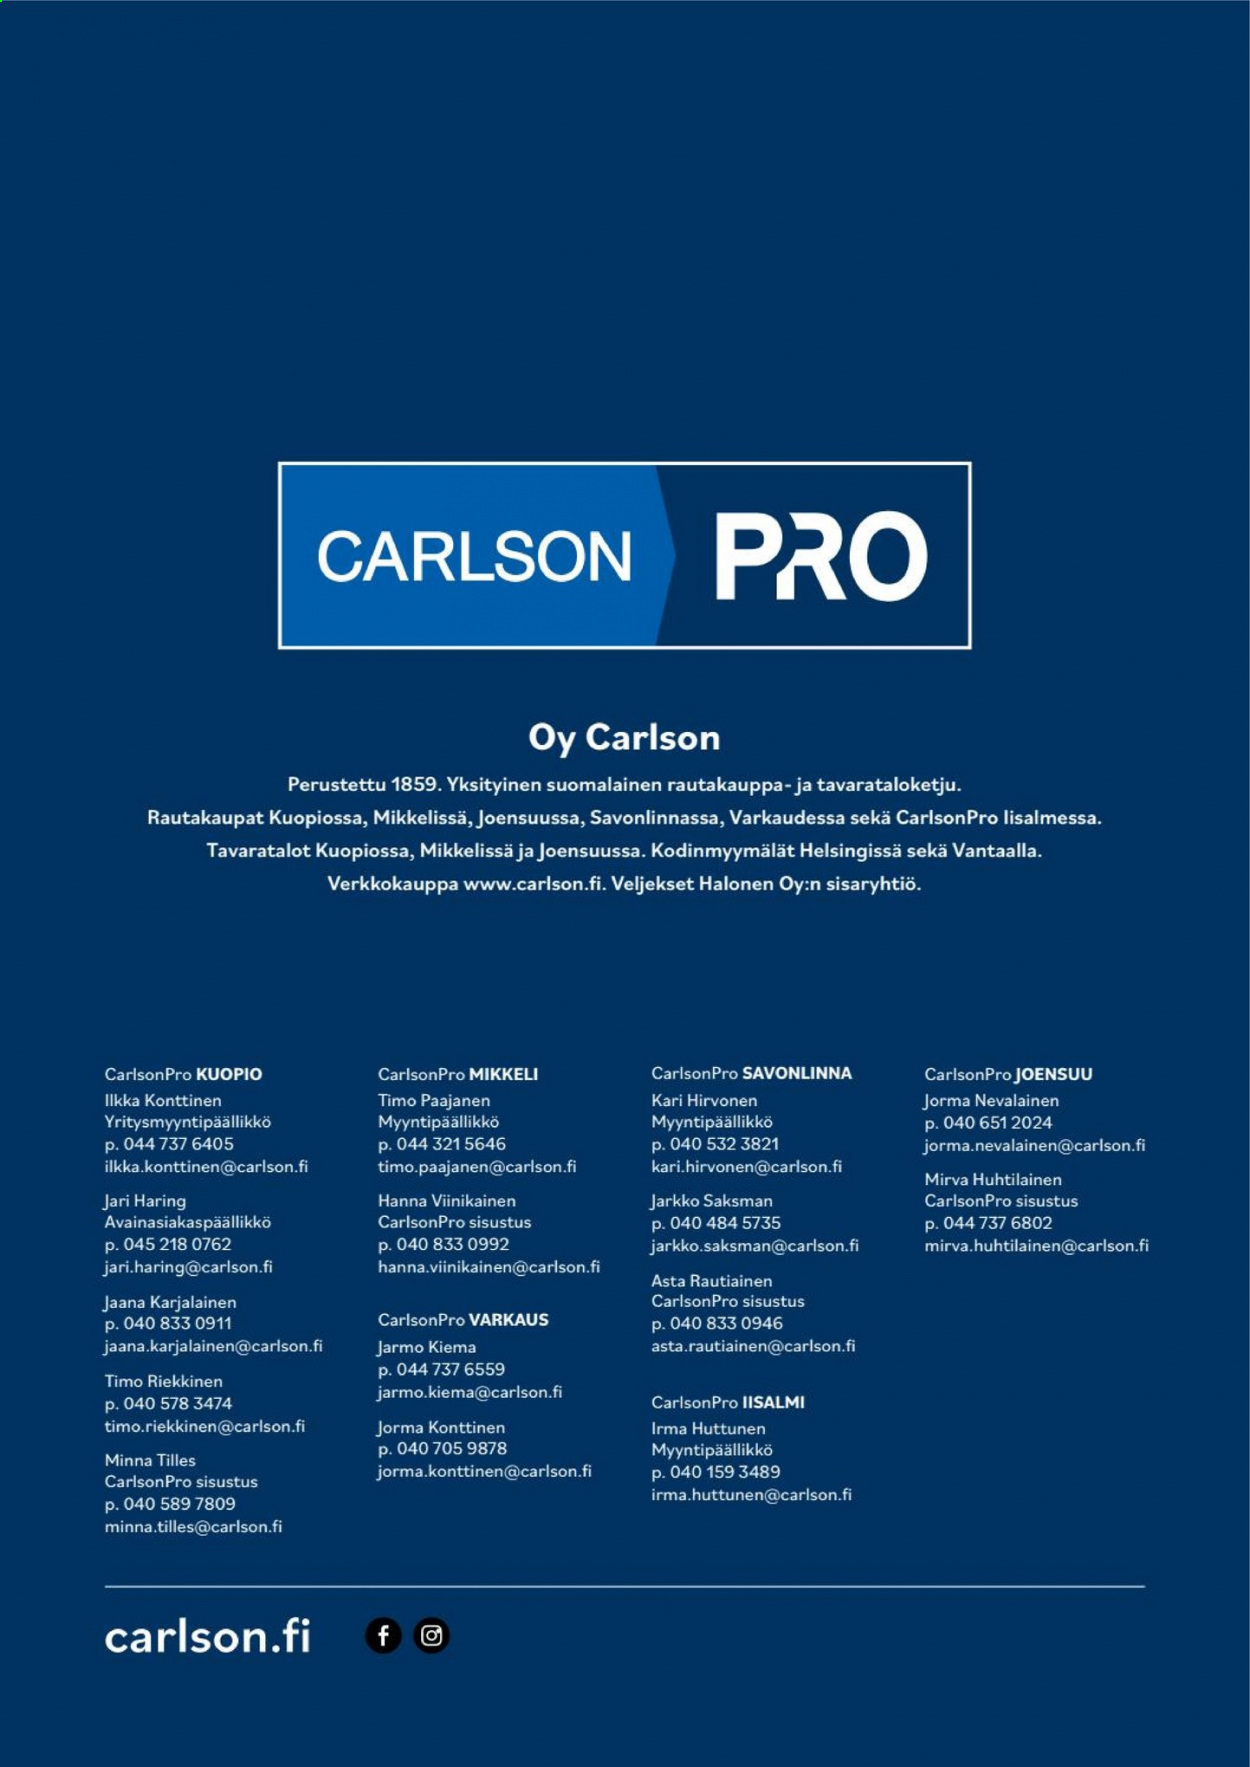 Carlson tarjouslehti .